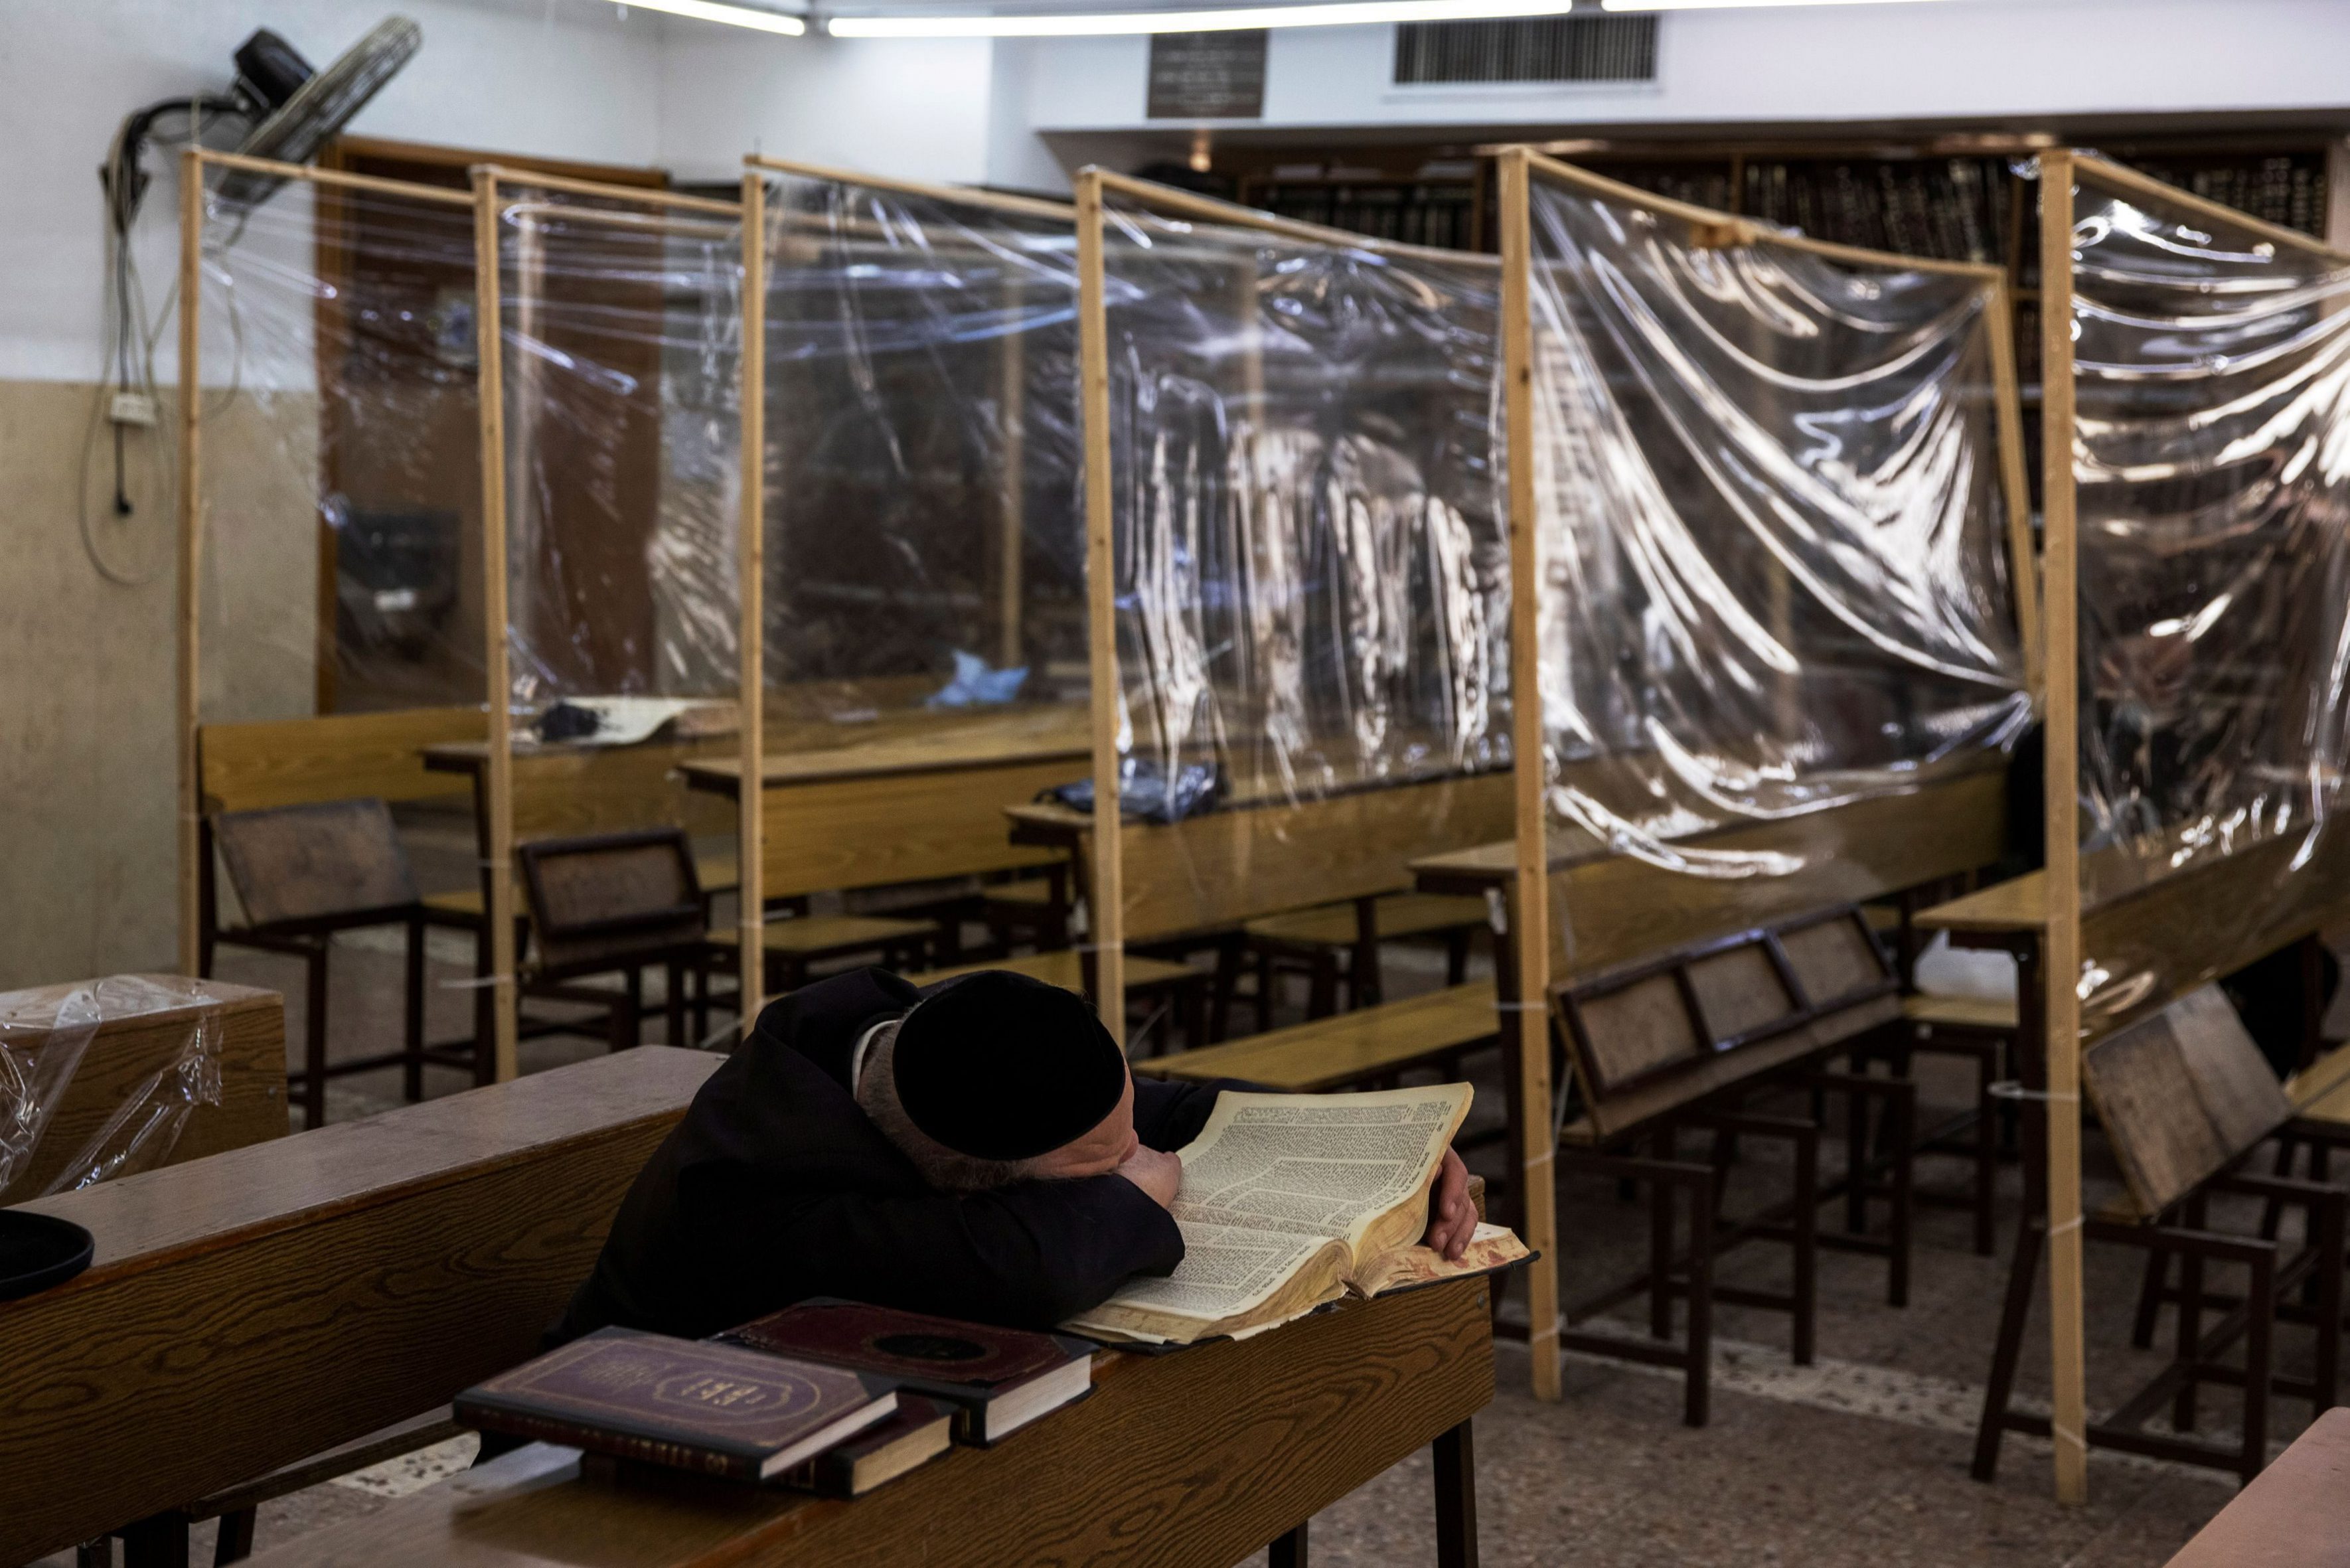 Studia w jesziwie, wyposażonej w przegrody chroniące przed rozprzestrzenianiem się koronawirusa, Jerozolima, 2 marca 2021 r.